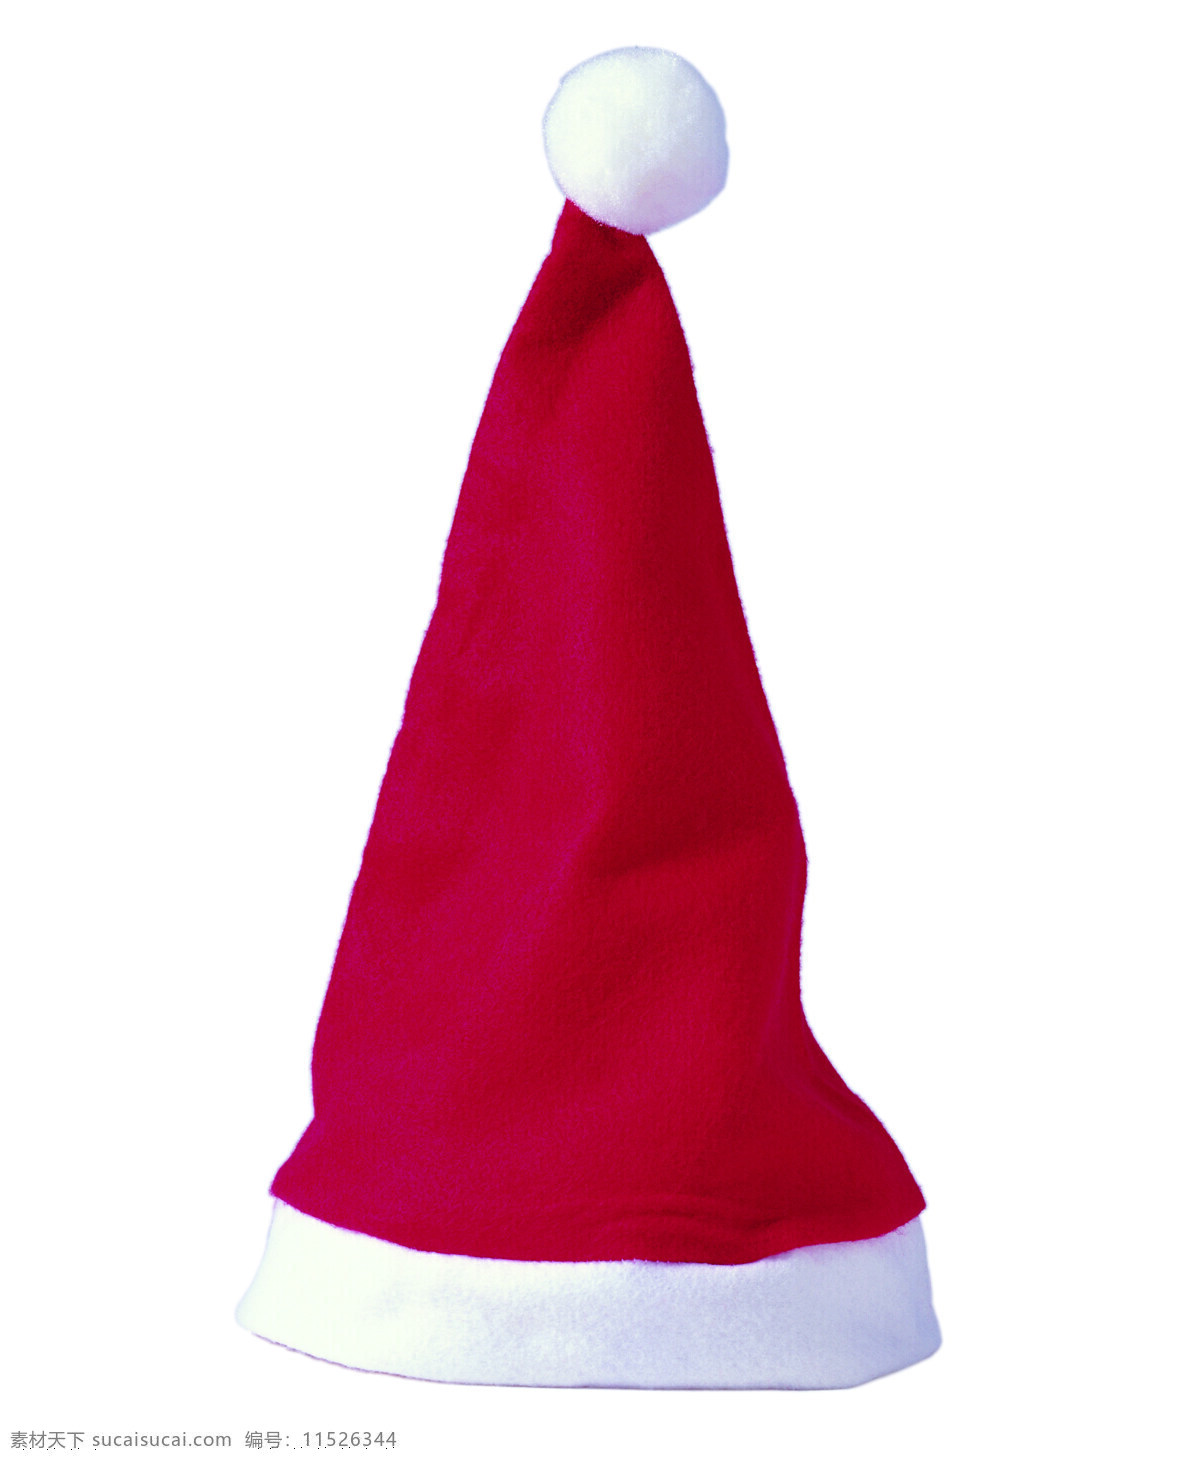 挂件 节日庆祝 帽子 摄影图库 圣诞节 圣诞老人 圣诞礼物 圣诞帽 圣诞 礼物 玩具 圣诞树 圣诞袜 文化艺术 psd源文件